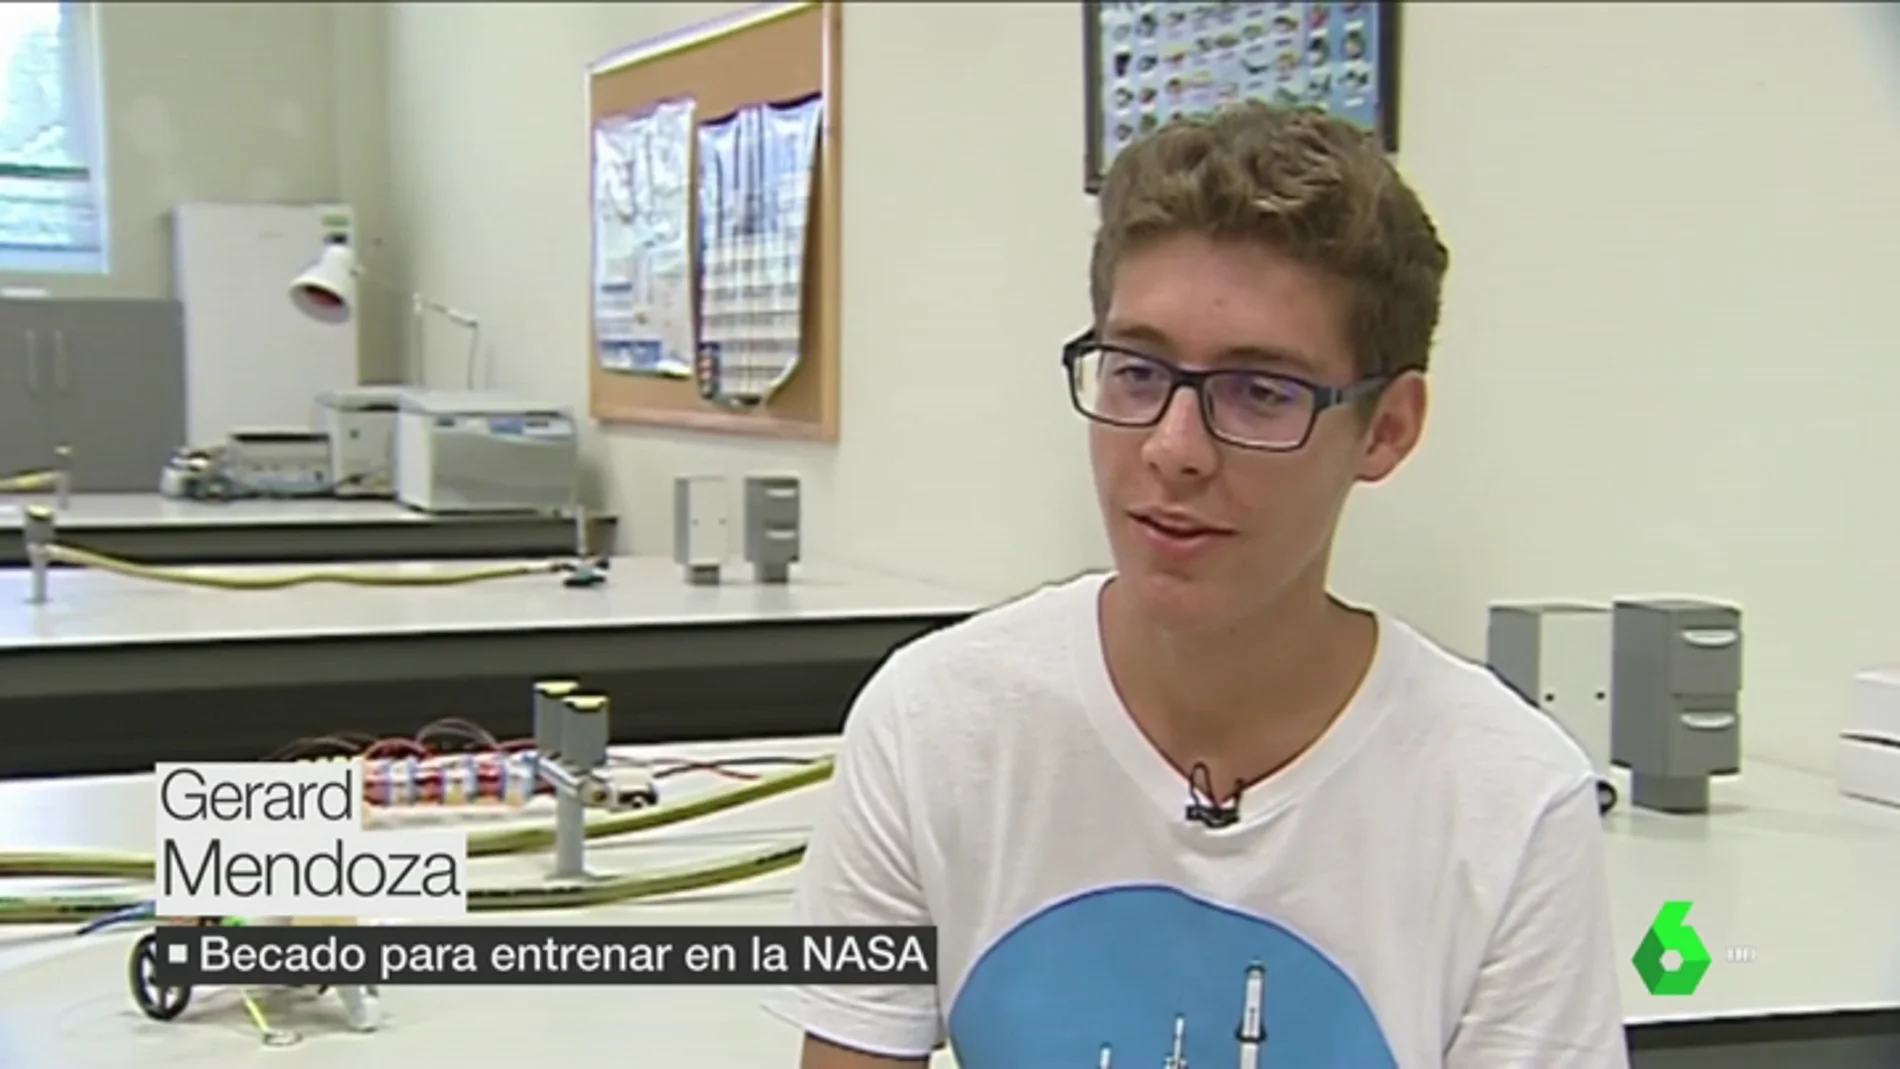 El sueño espacial de Gerard, becado para aprender a ser astronauta en la NASA: "Podría llegar a ser el próximo Pedro Duque"